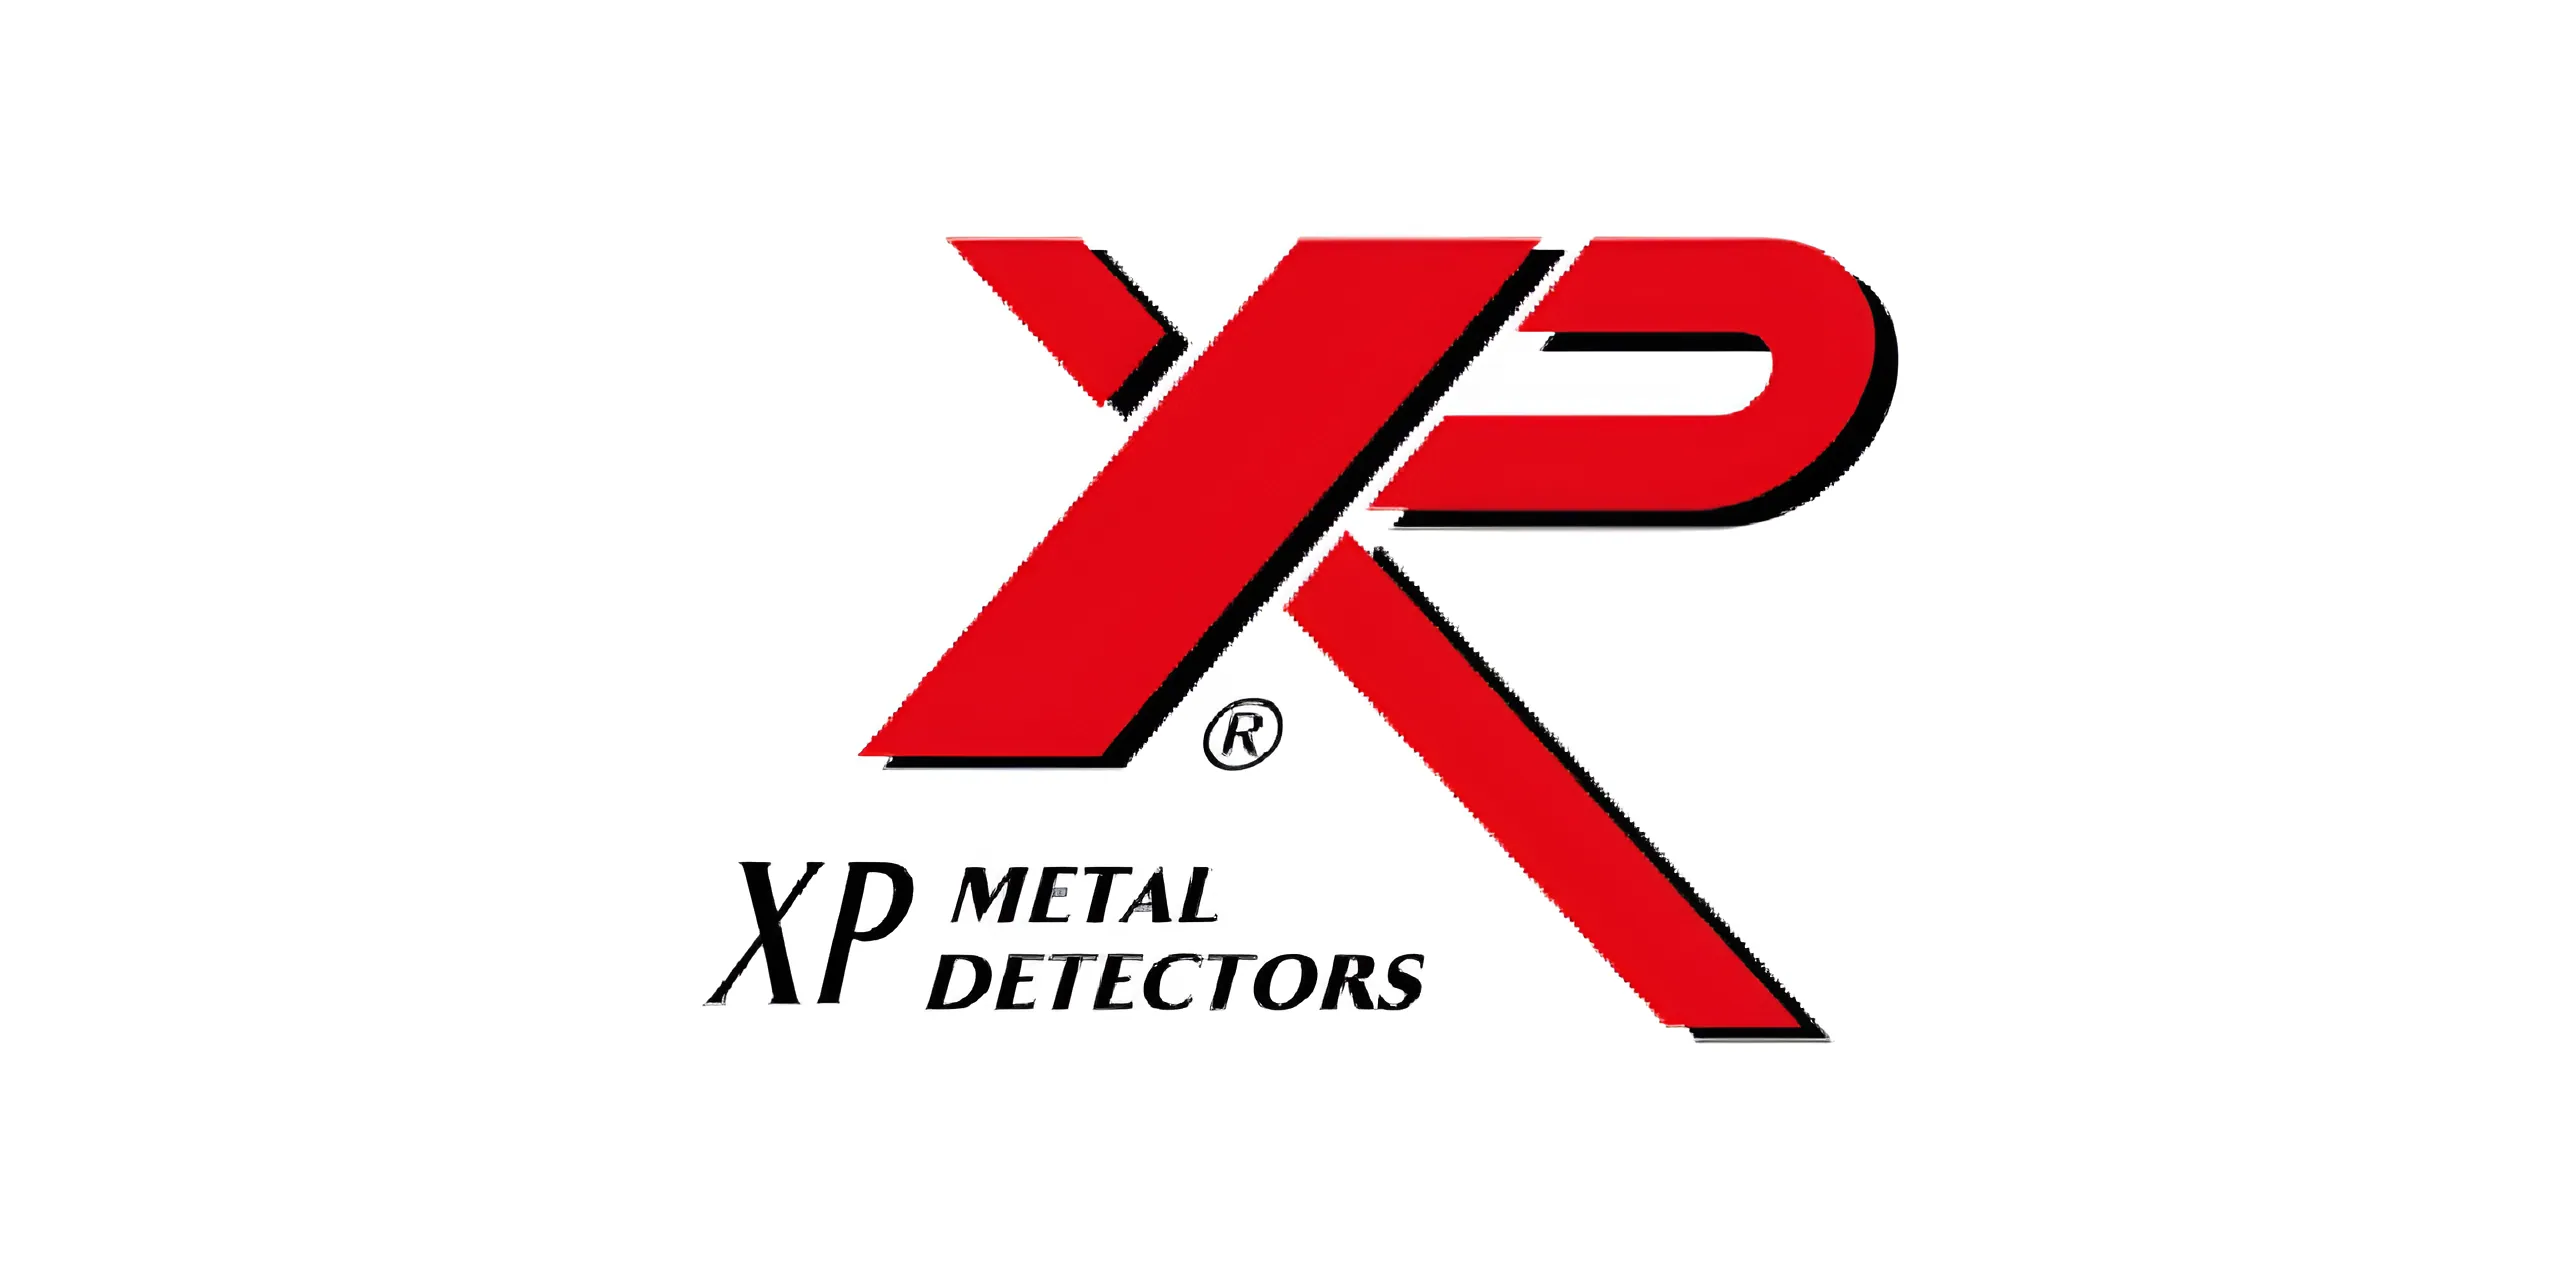 XP Metal Detectors Company's LOGO